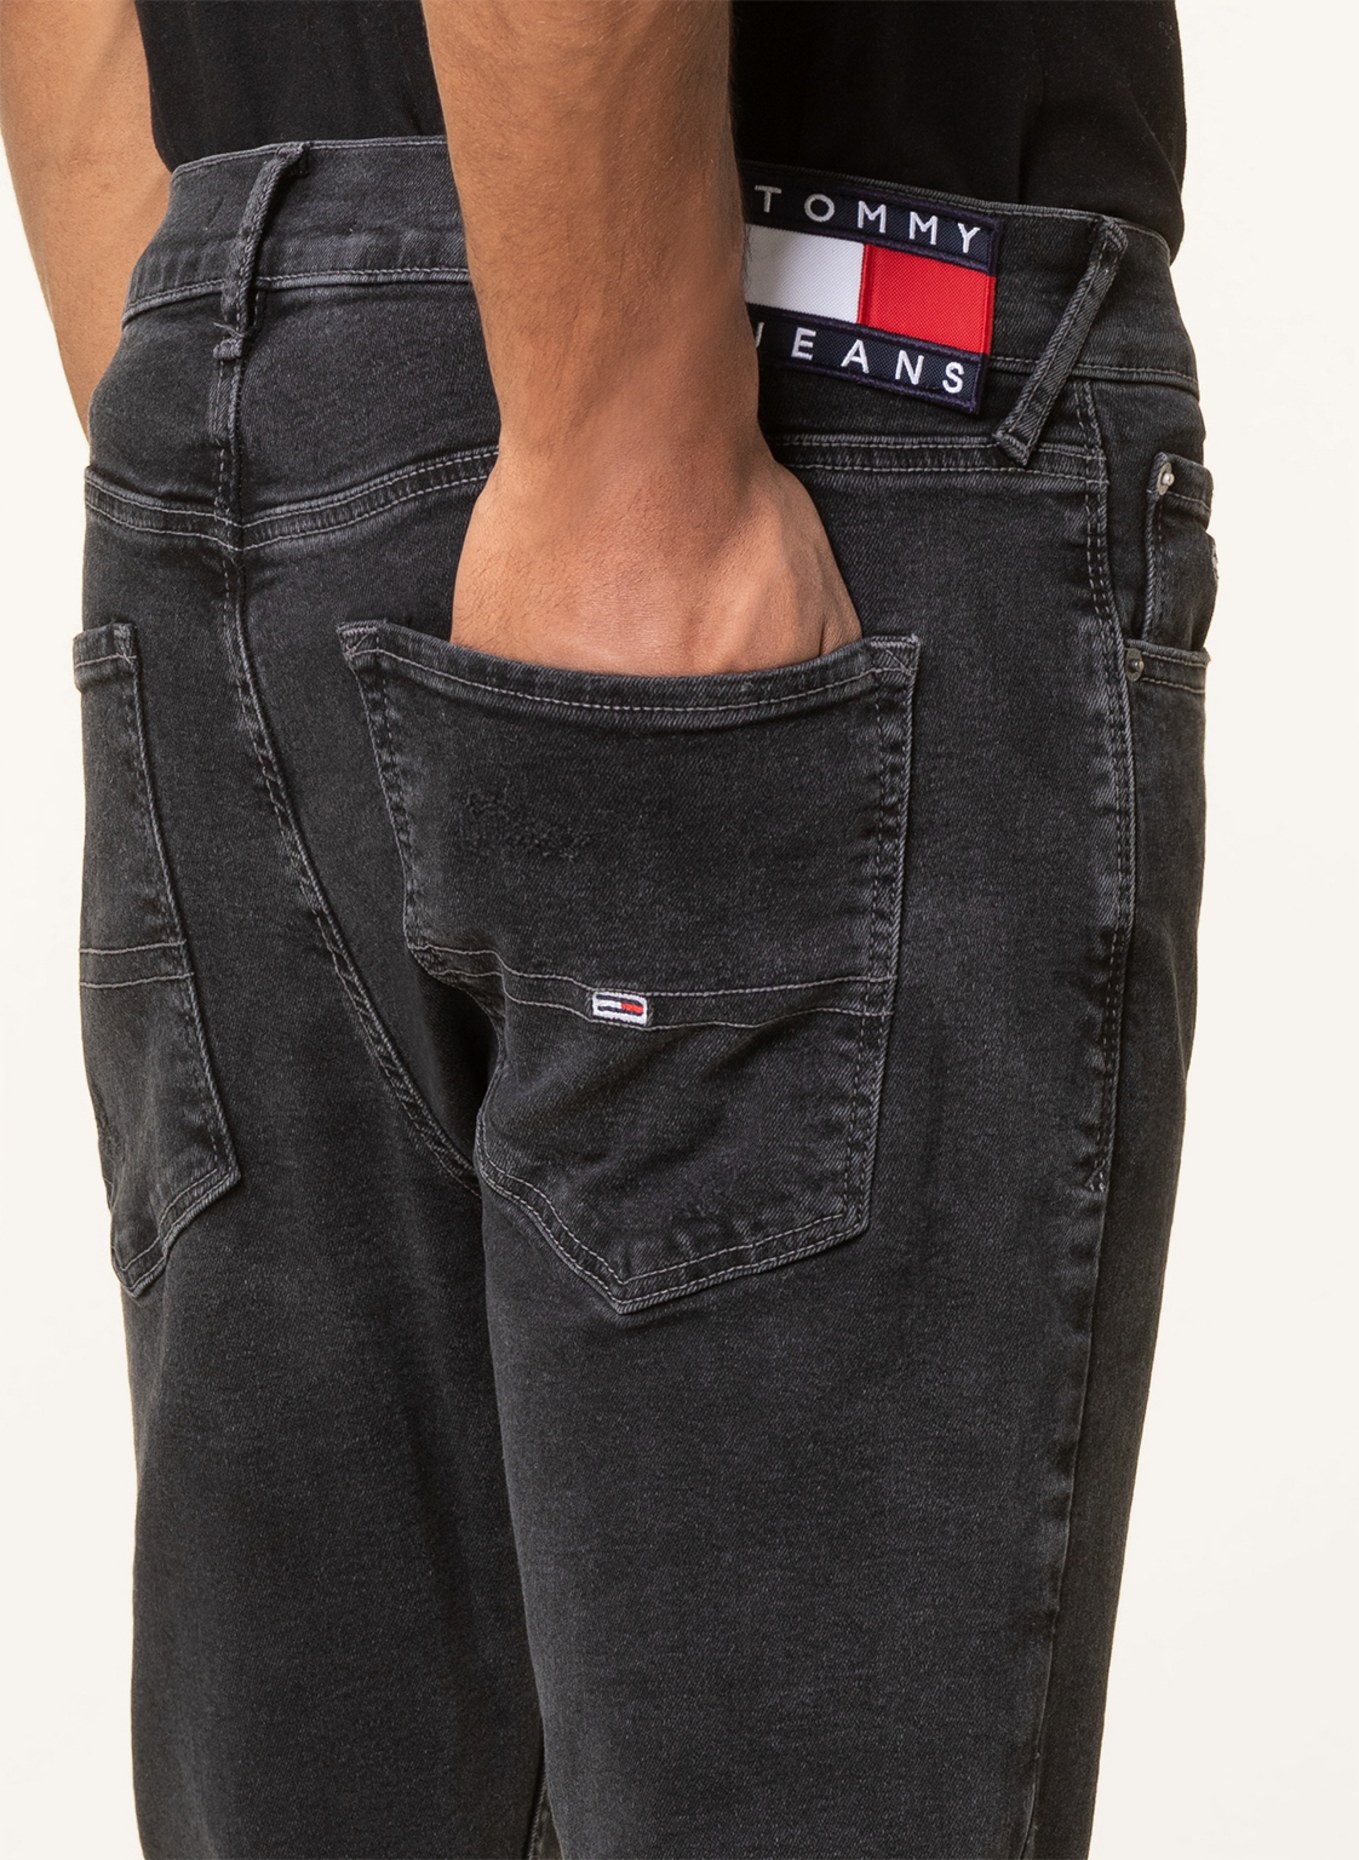 TOMMY JEANS Jeans SCANTON slim fit , Color: 1BZ Denim Black (Image 5)